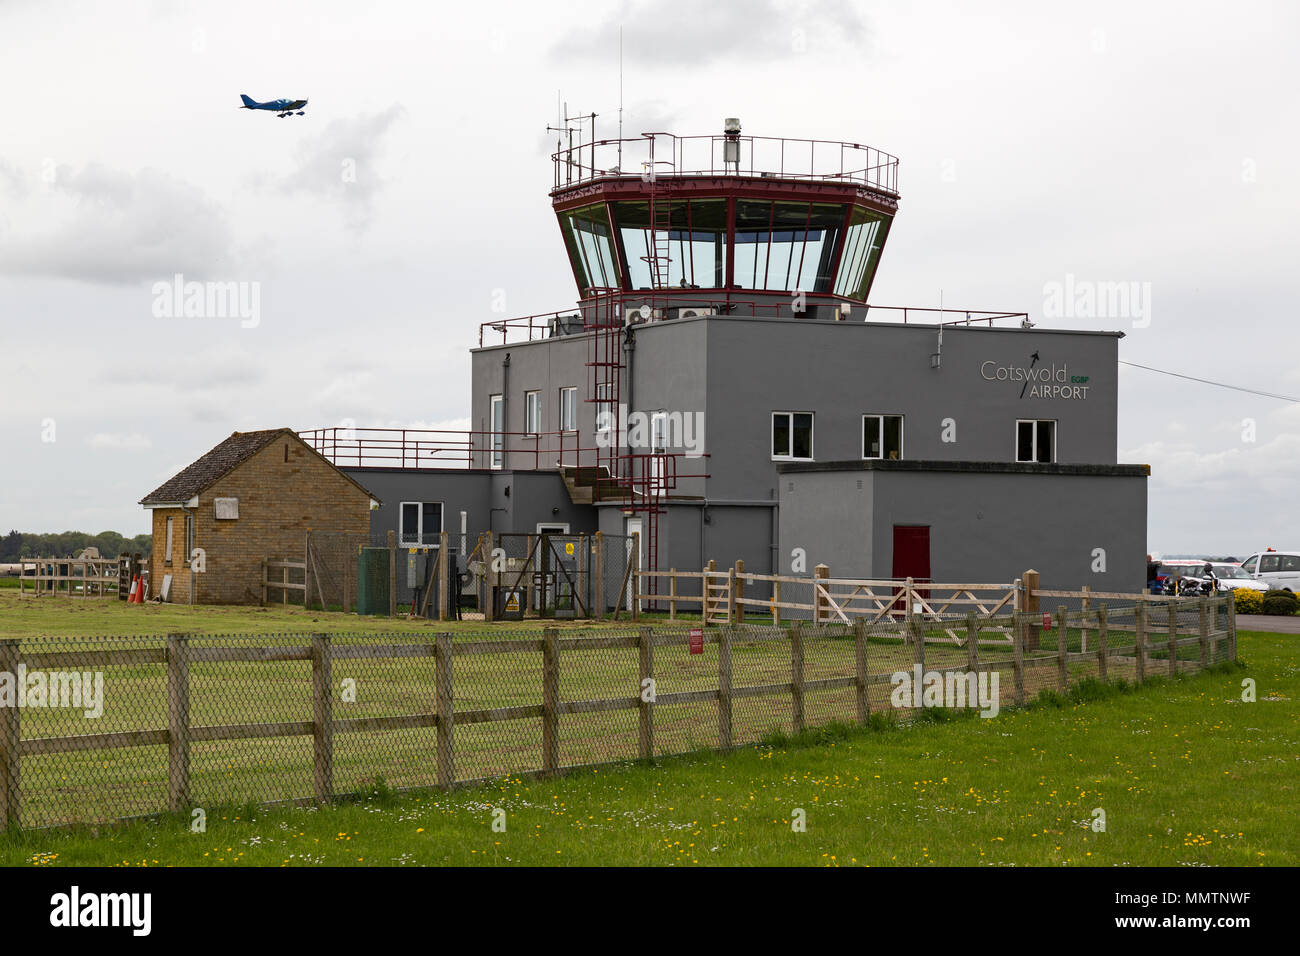 La torre di controllo a Cotswold Kemble Aeroporto di Gloucestershire, Inghilterra. Foto Stock